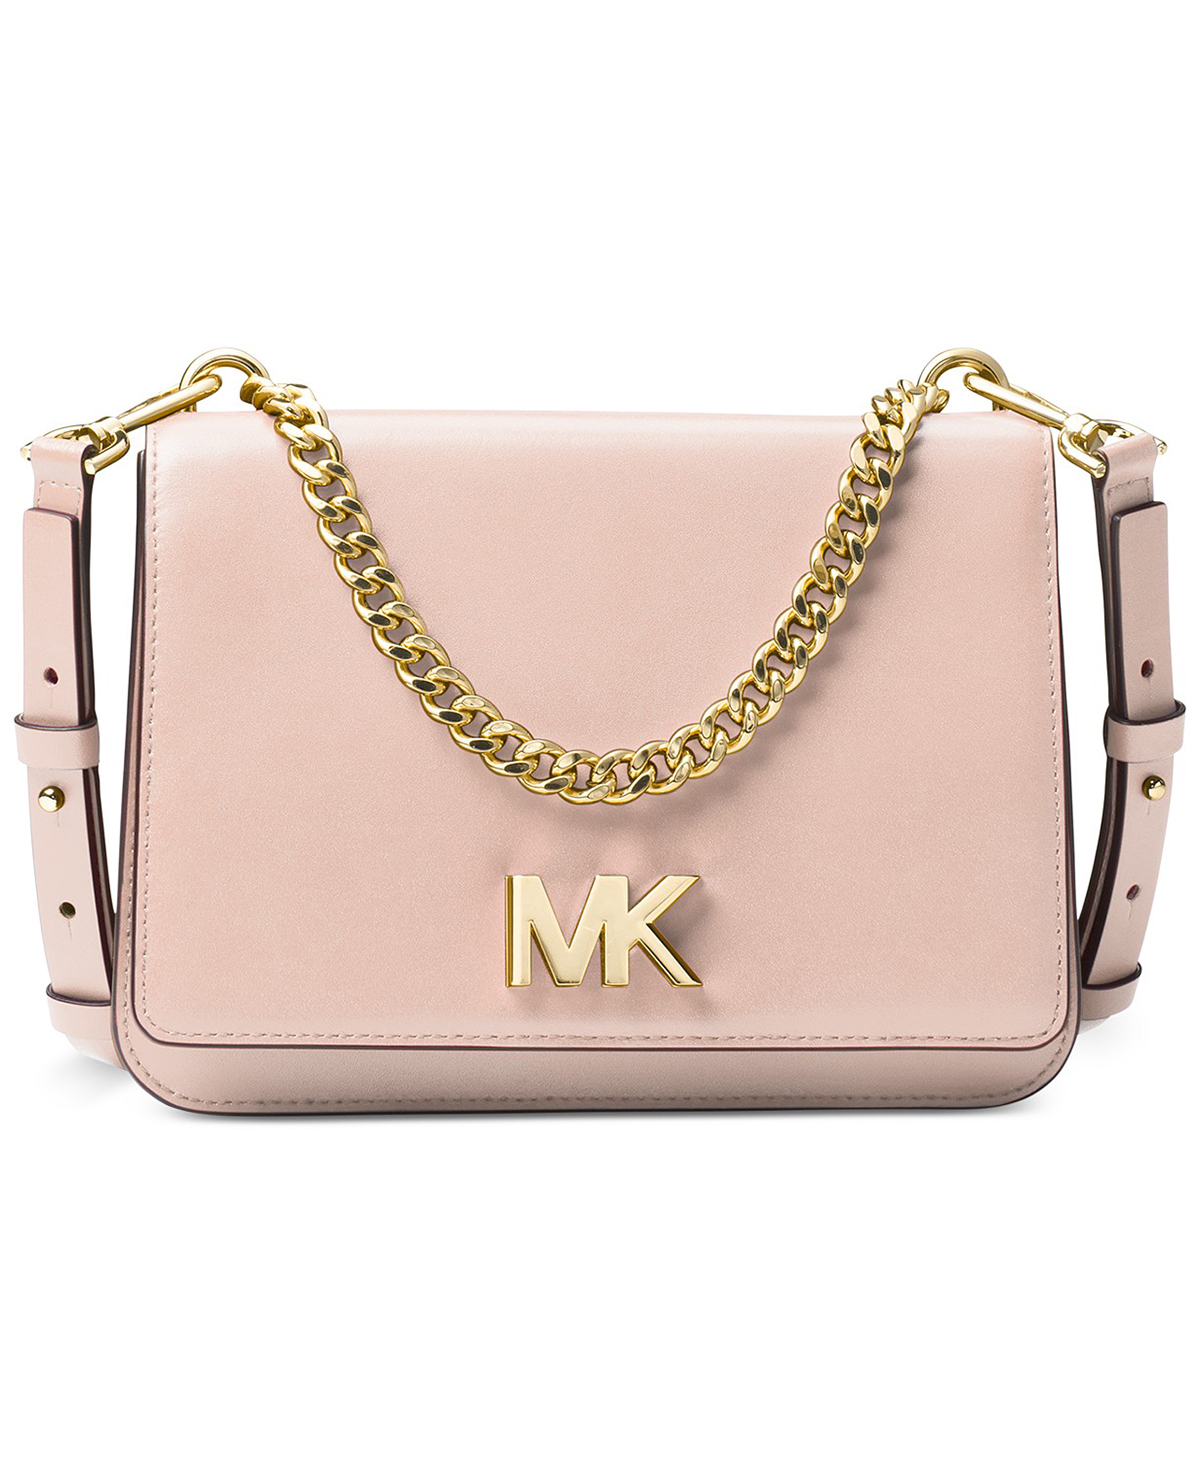 mk handbags macys